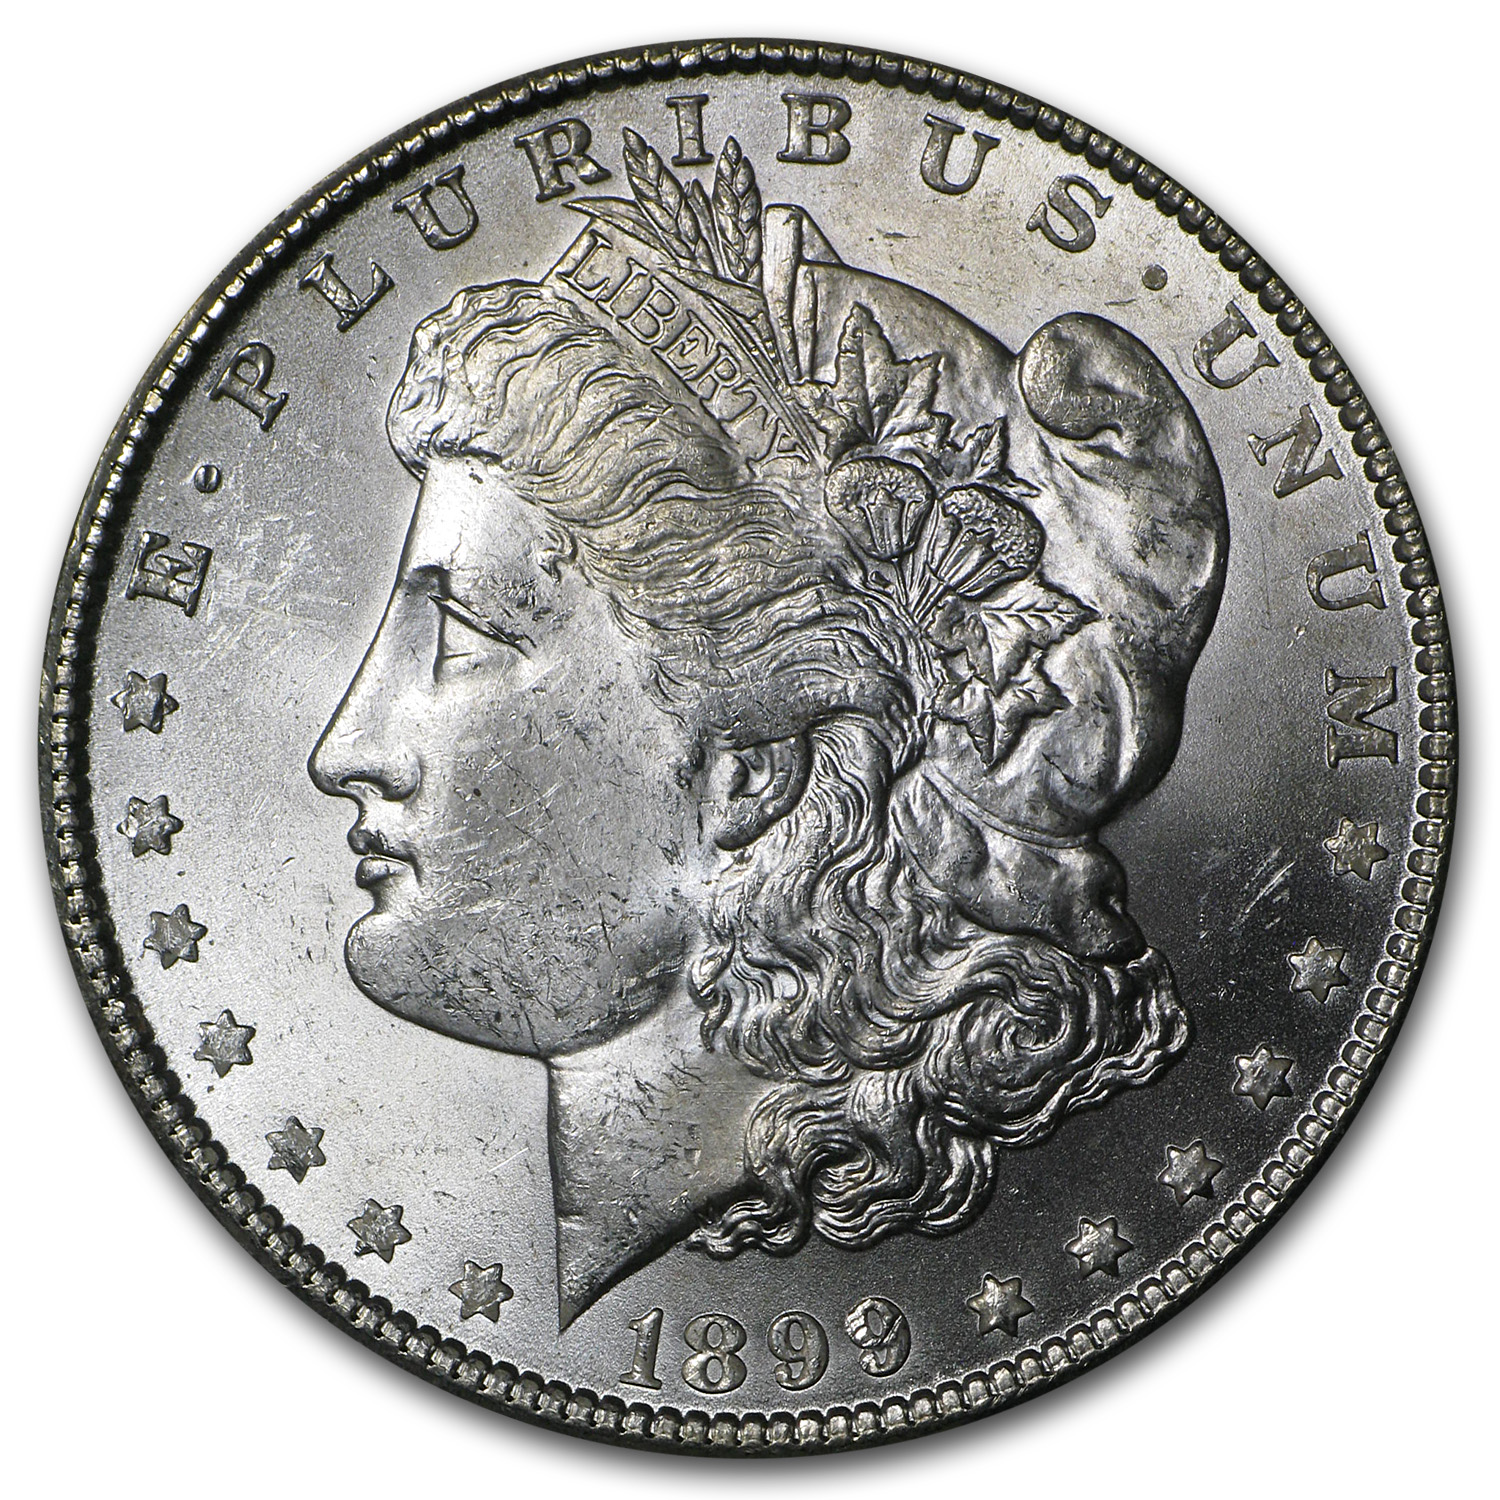 Buy 1899-O Morgan Dollar BU